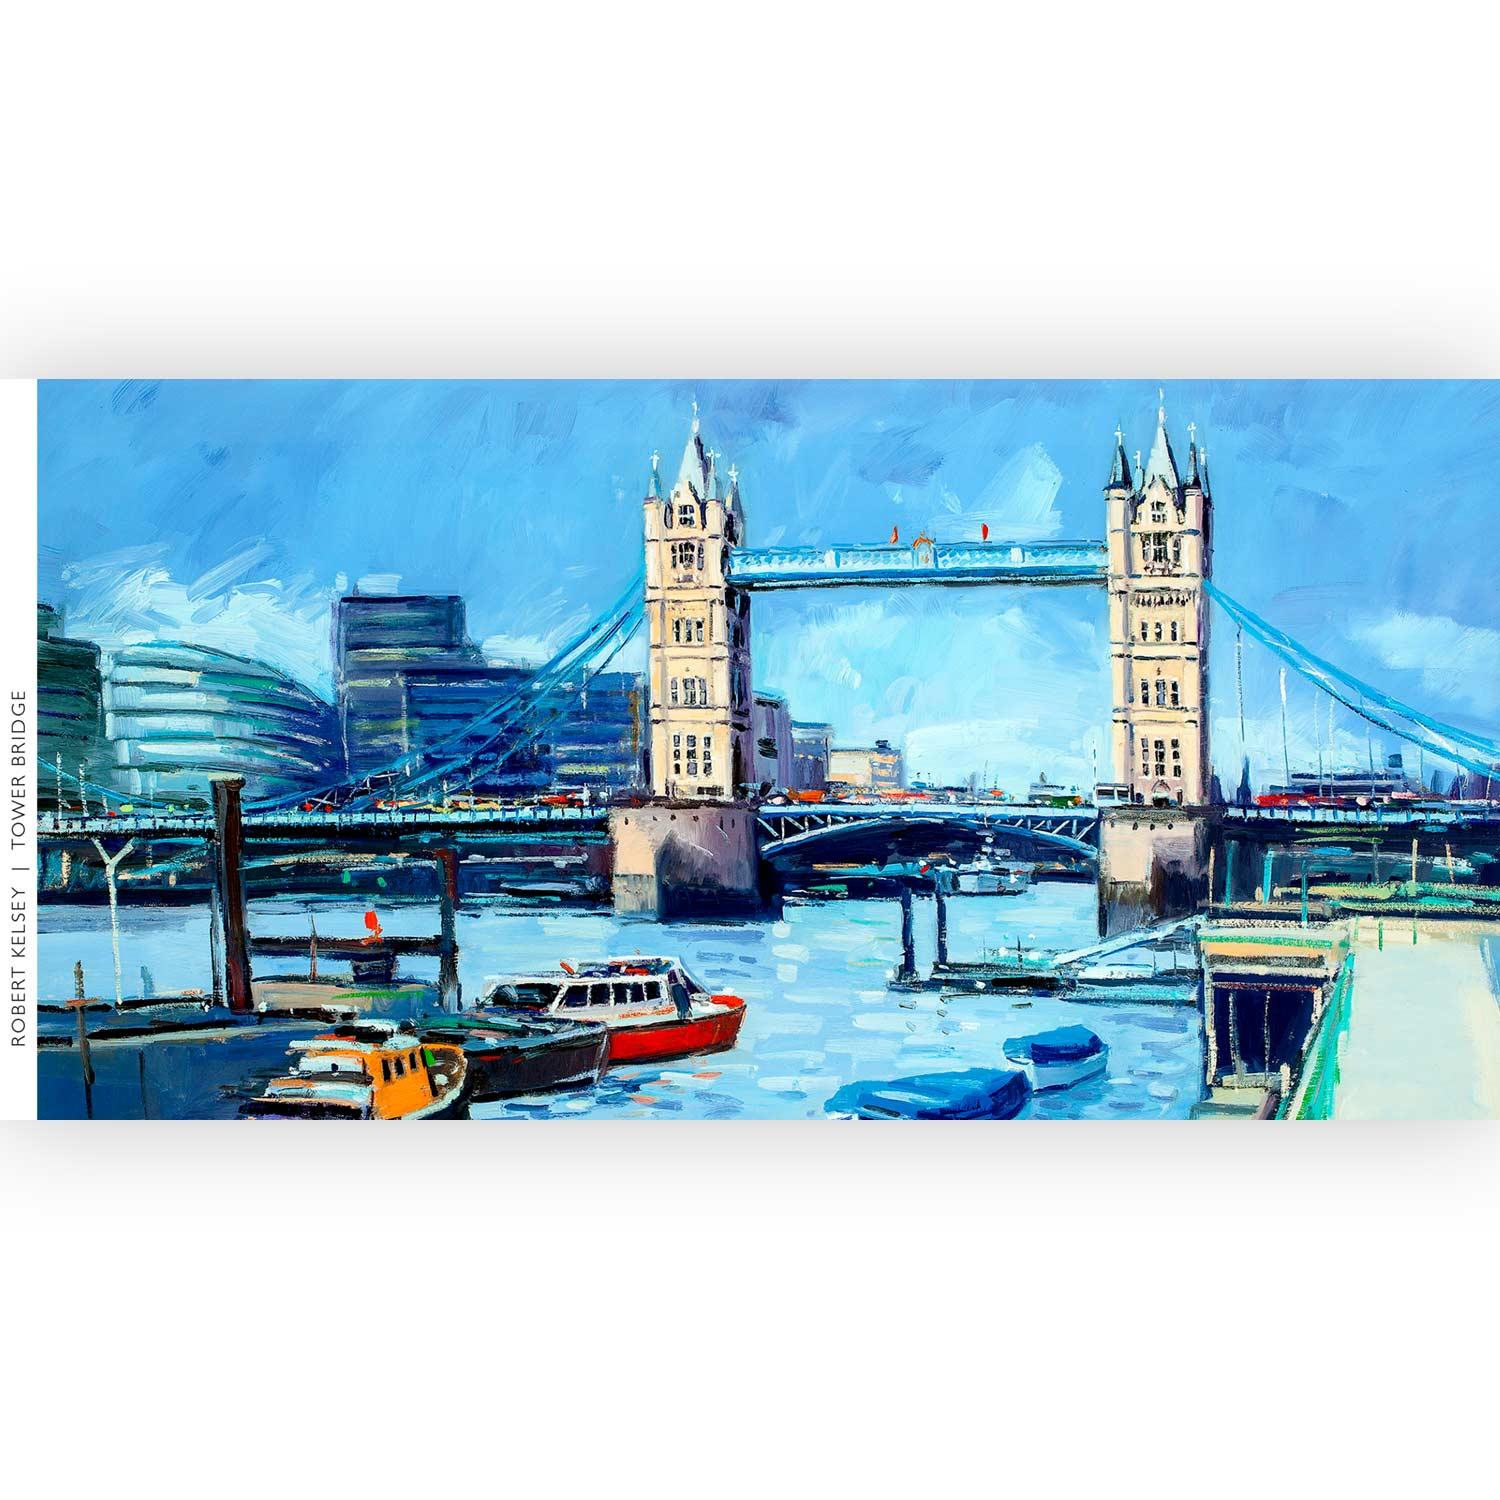 Tower Bridge by artist Robert Kelsey